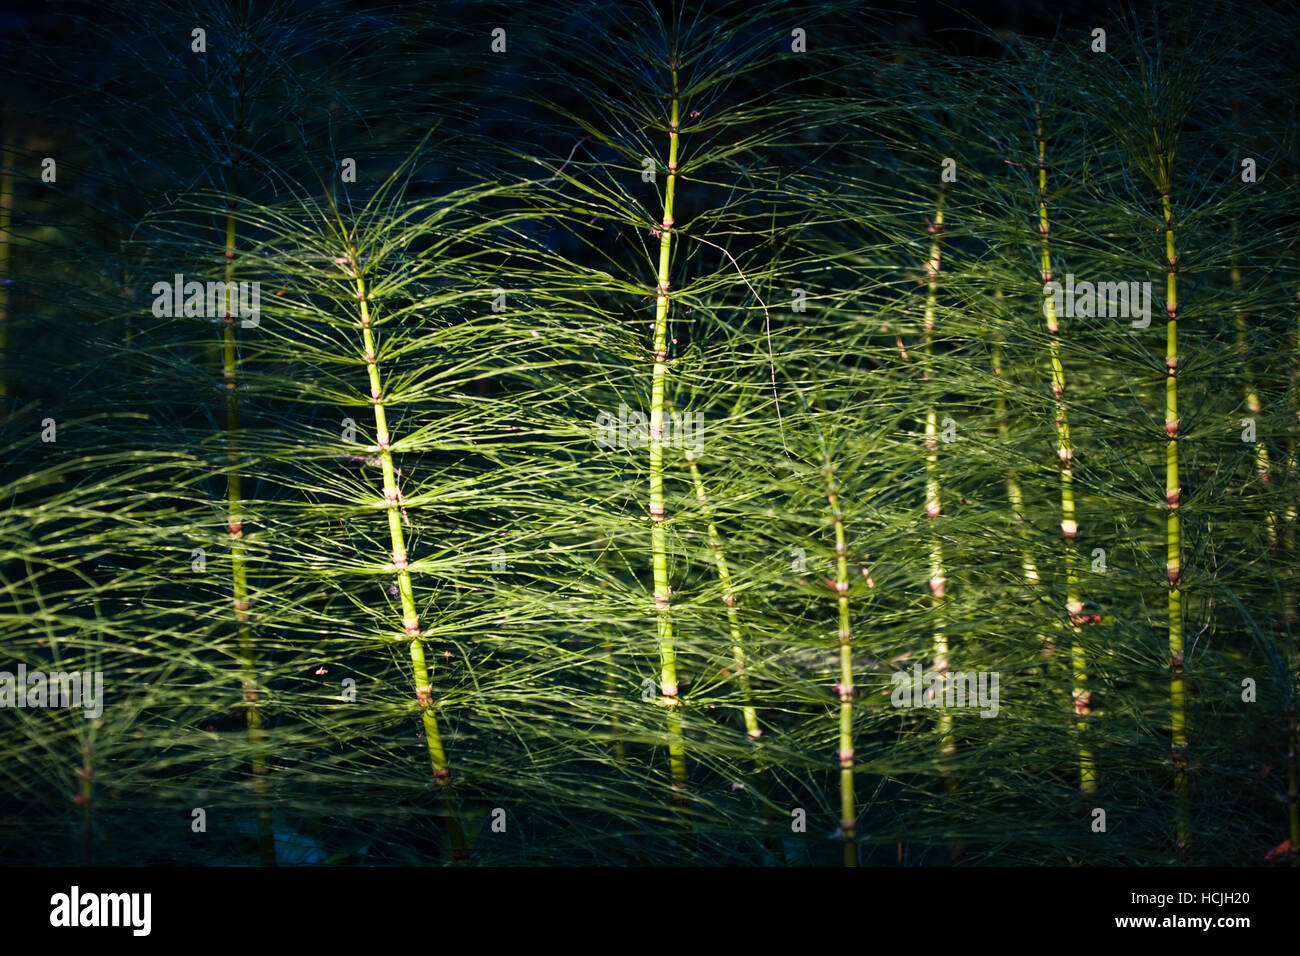 Eine Welle des Lichtes schlägt Schachtelhalme (Equisetum sp) im Washington Park Arboretum in Seattle, Washington. Stadtpark, ein lebendiges Museum nach Hause zu mehr als 20.000 Pflanzenarten aus der ganzen Welt, feiert seinen 75. Geburtstag dieses Jahr. Stockfoto